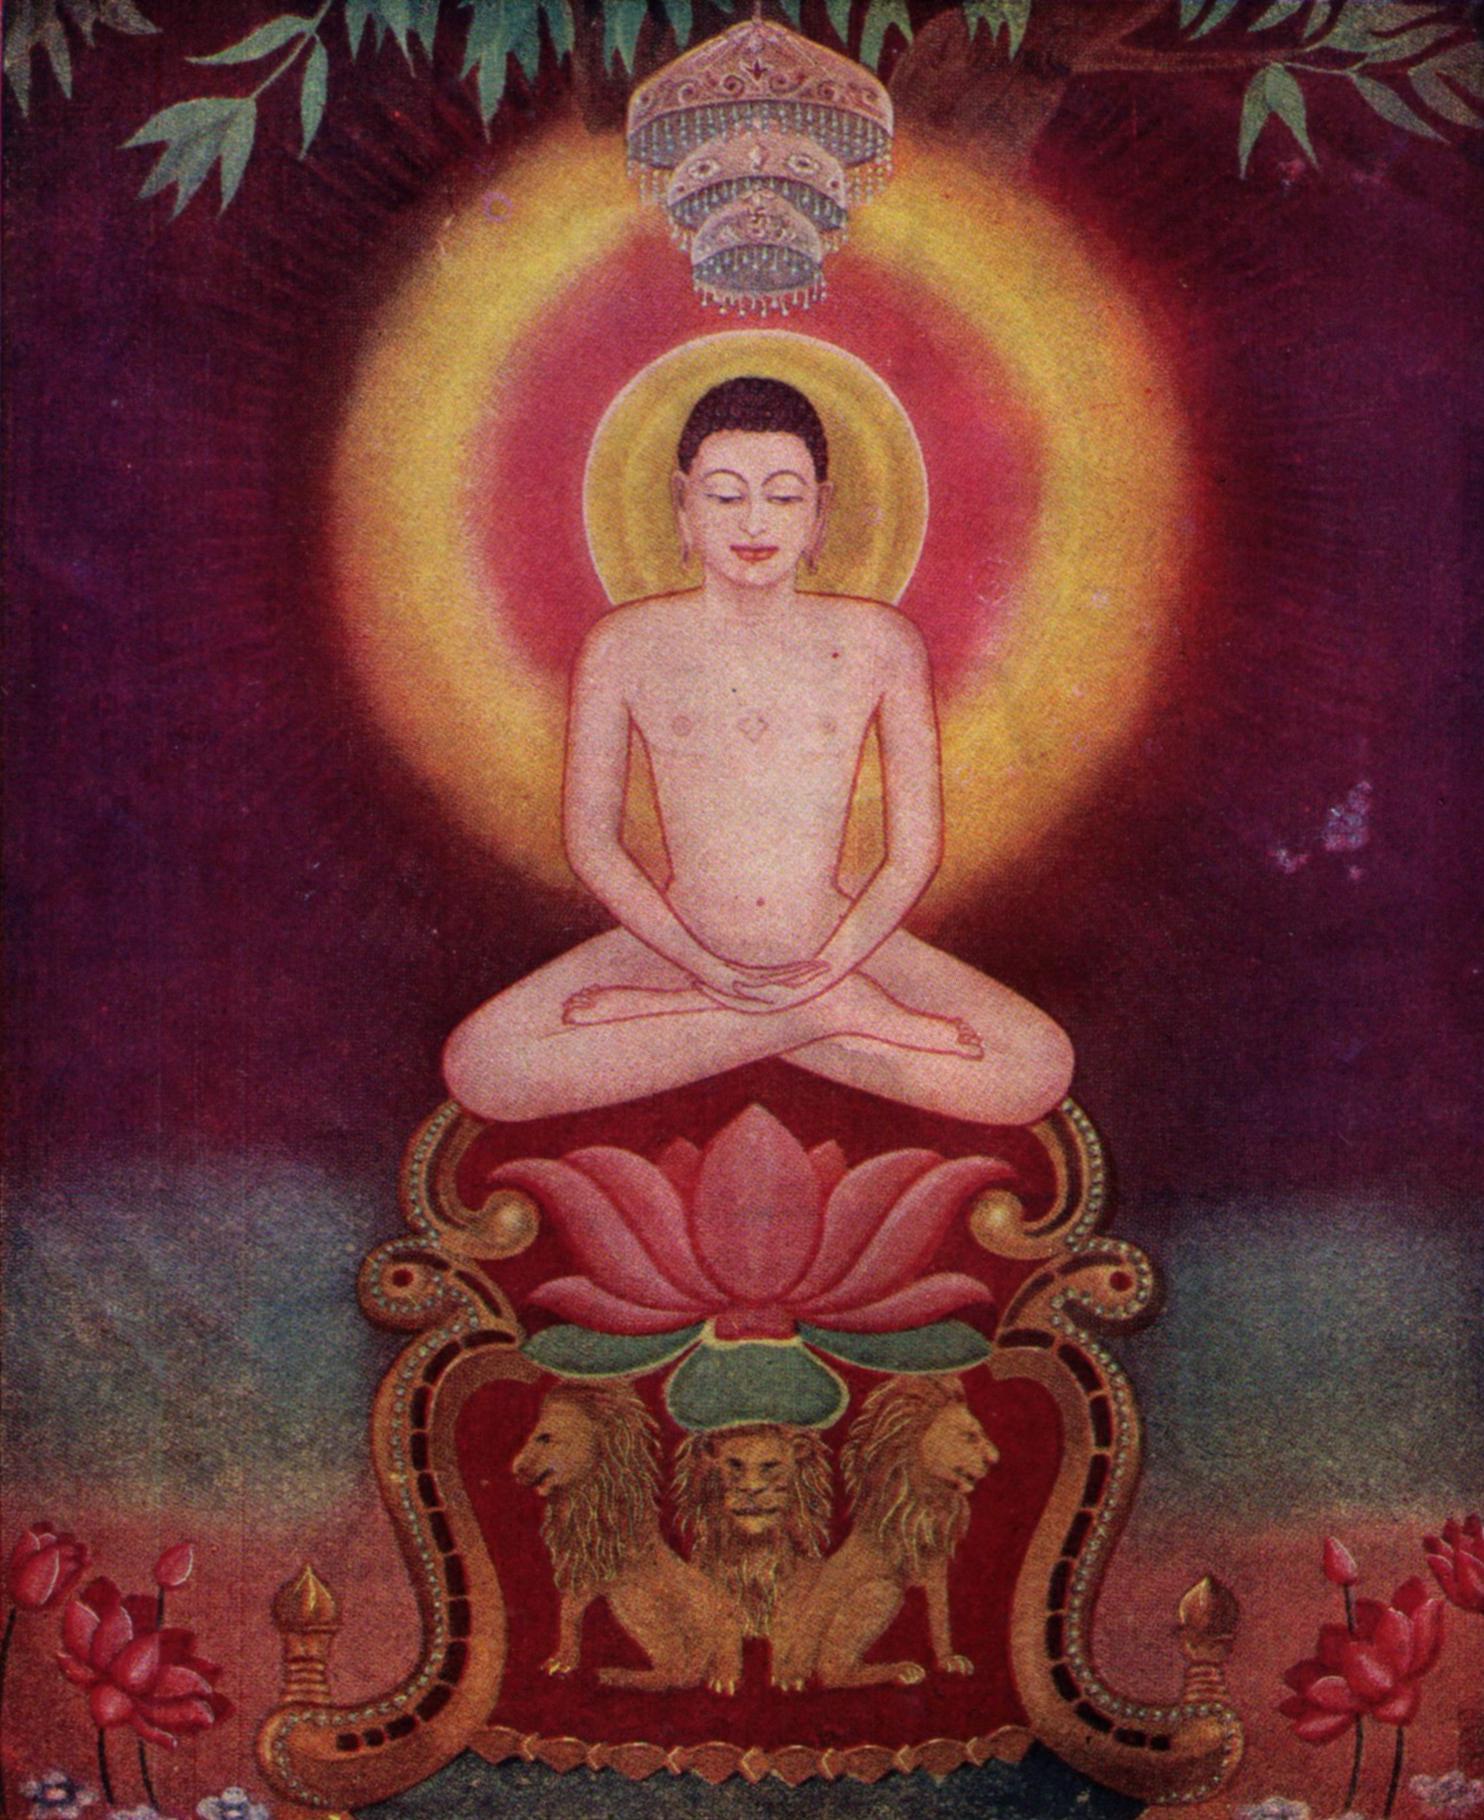 Lord Mahavira Meditating